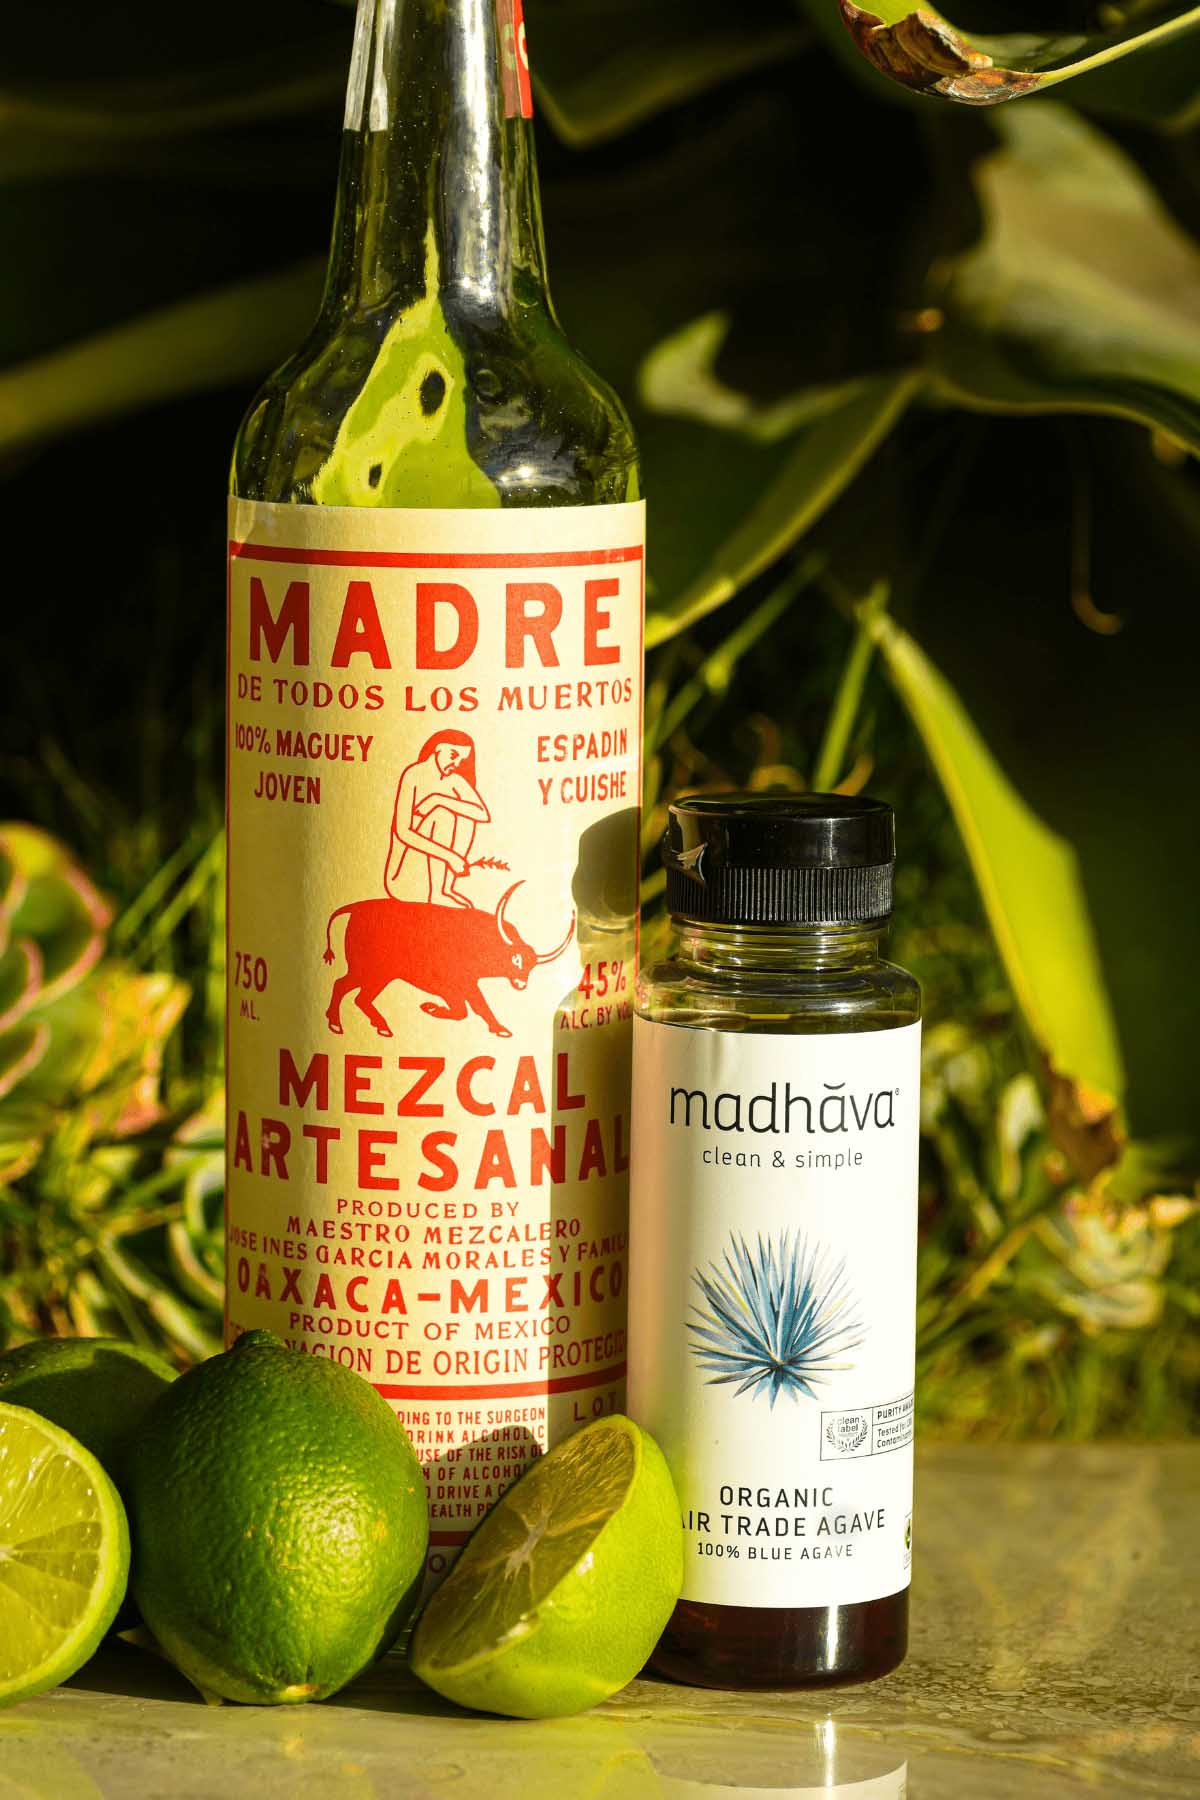 mezcal alcohol bottle next to agave syrup bottle.